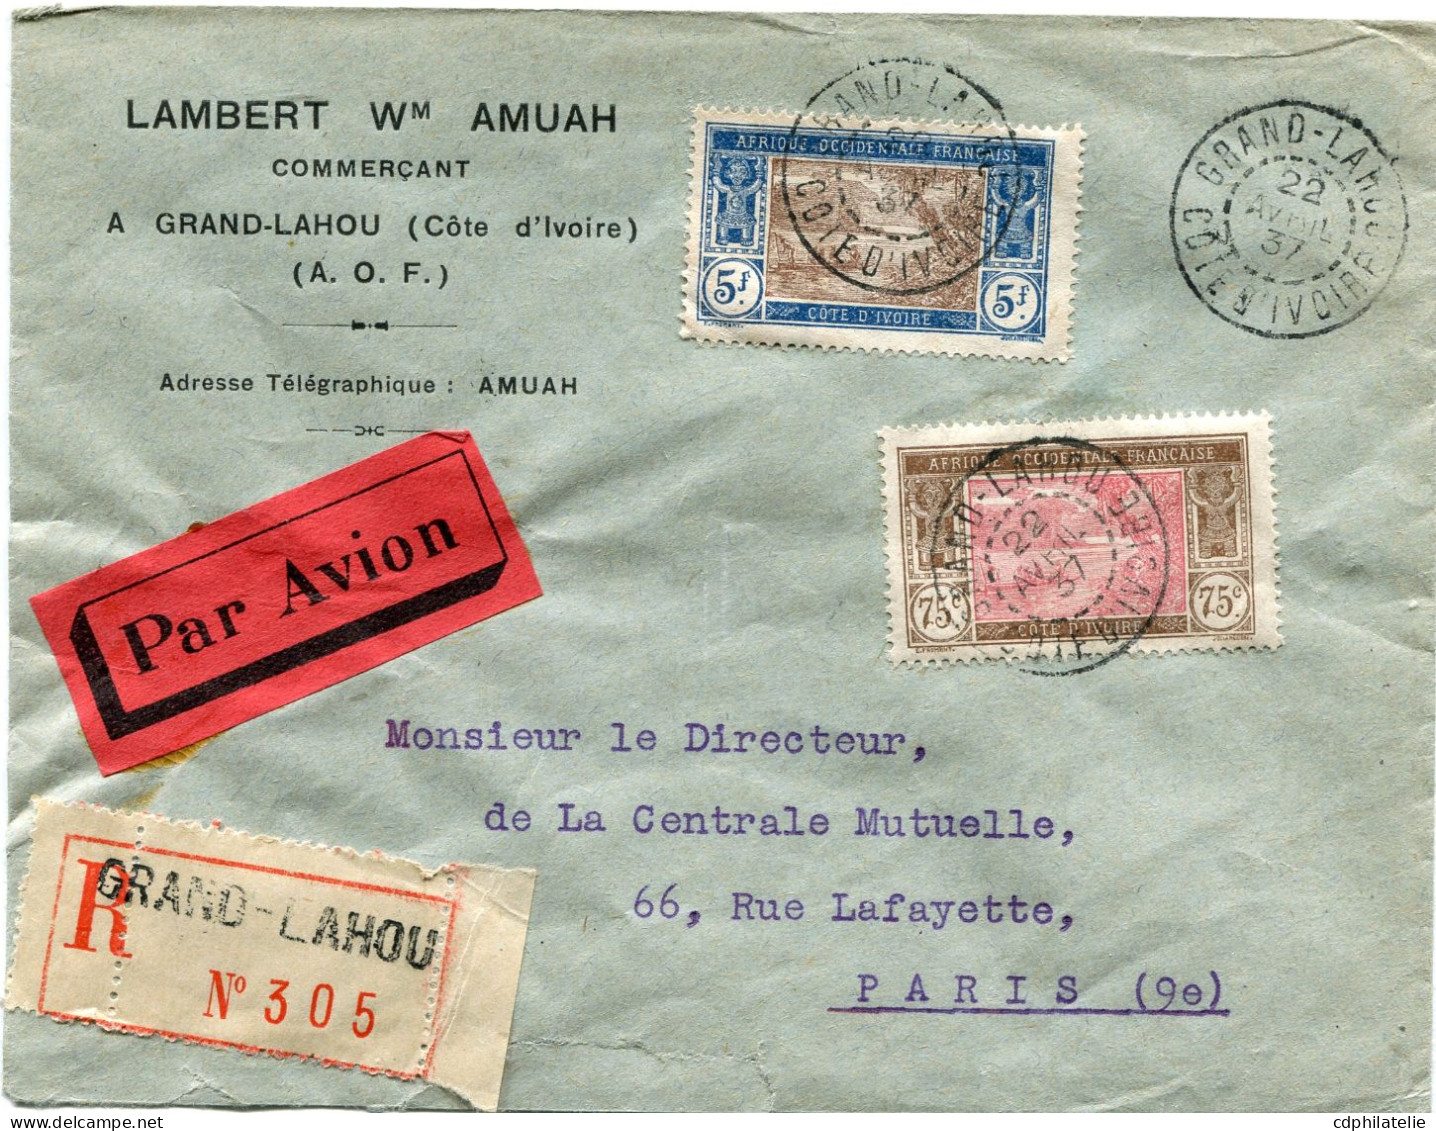 COTE D'IVOIRE LETTRE RECOMMANDEE PAR AVION DEPART GRAND-LAHOU 22 AVRIL 37 COTE D'IVOIRE POUR LA FRANCE - Lettres & Documents